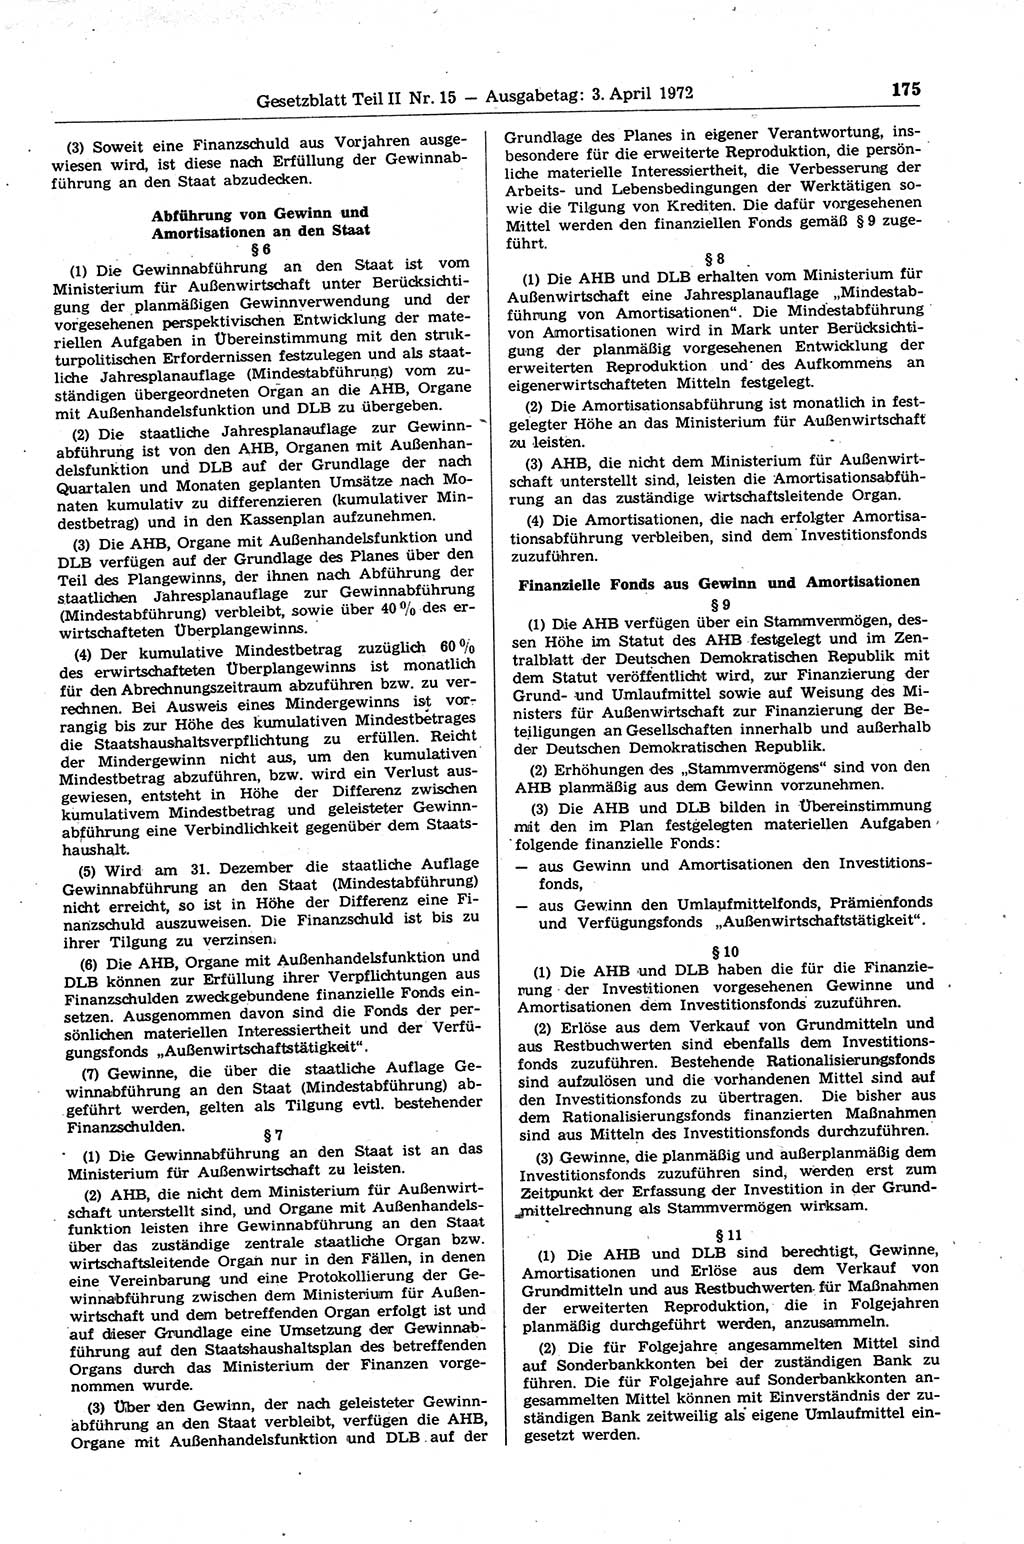 Gesetzblatt (GBl.) der Deutschen Demokratischen Republik (DDR) Teil ⅠⅠ 1972, Seite 175 (GBl. DDR ⅠⅠ 1972, S. 175)